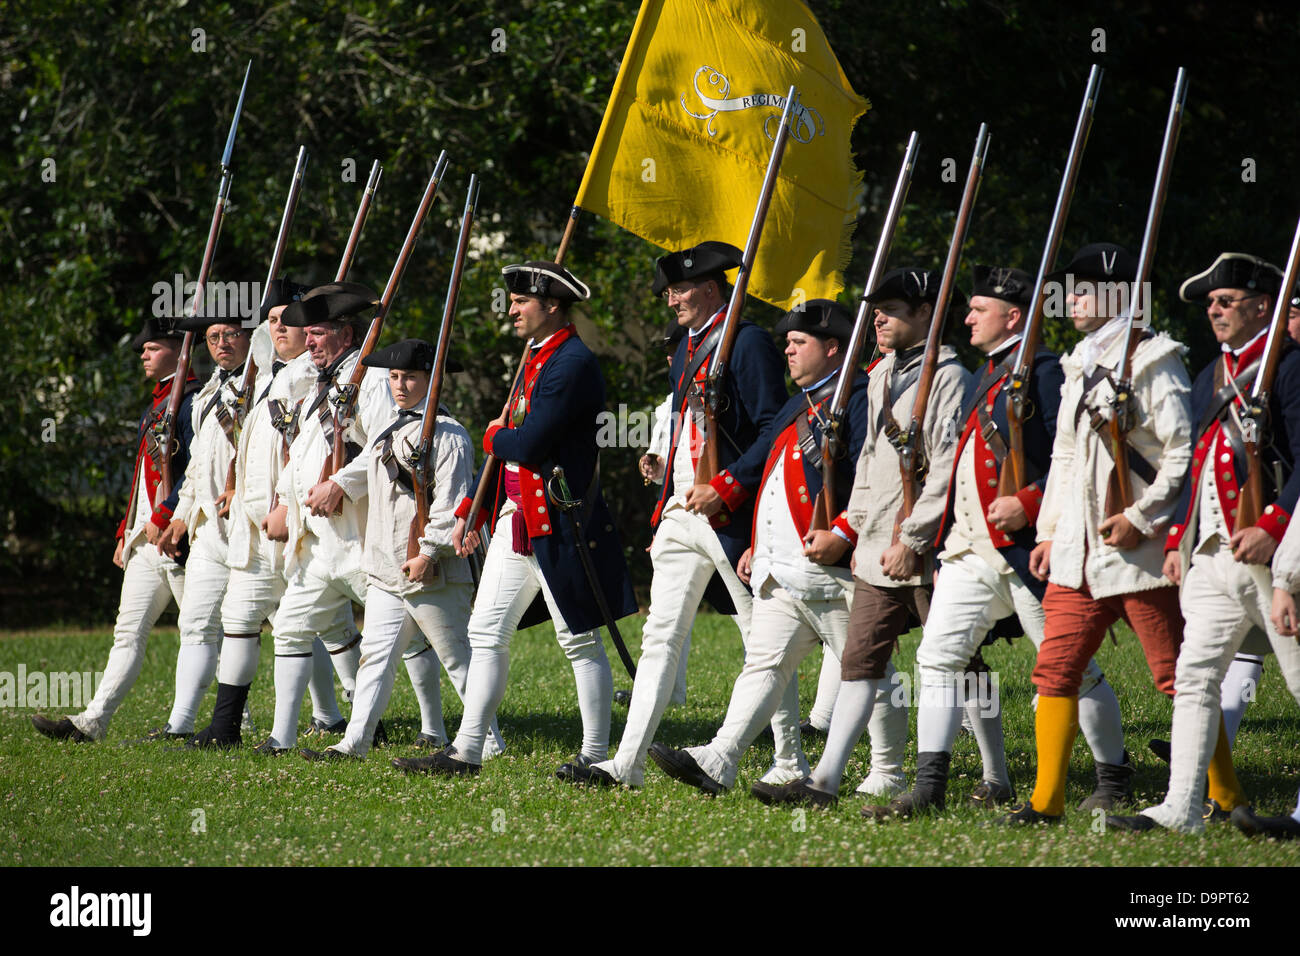 Reconstitution de la guerre révolutionnaire à Colonial Williamsburg, Virginia, USA Banque D'Images